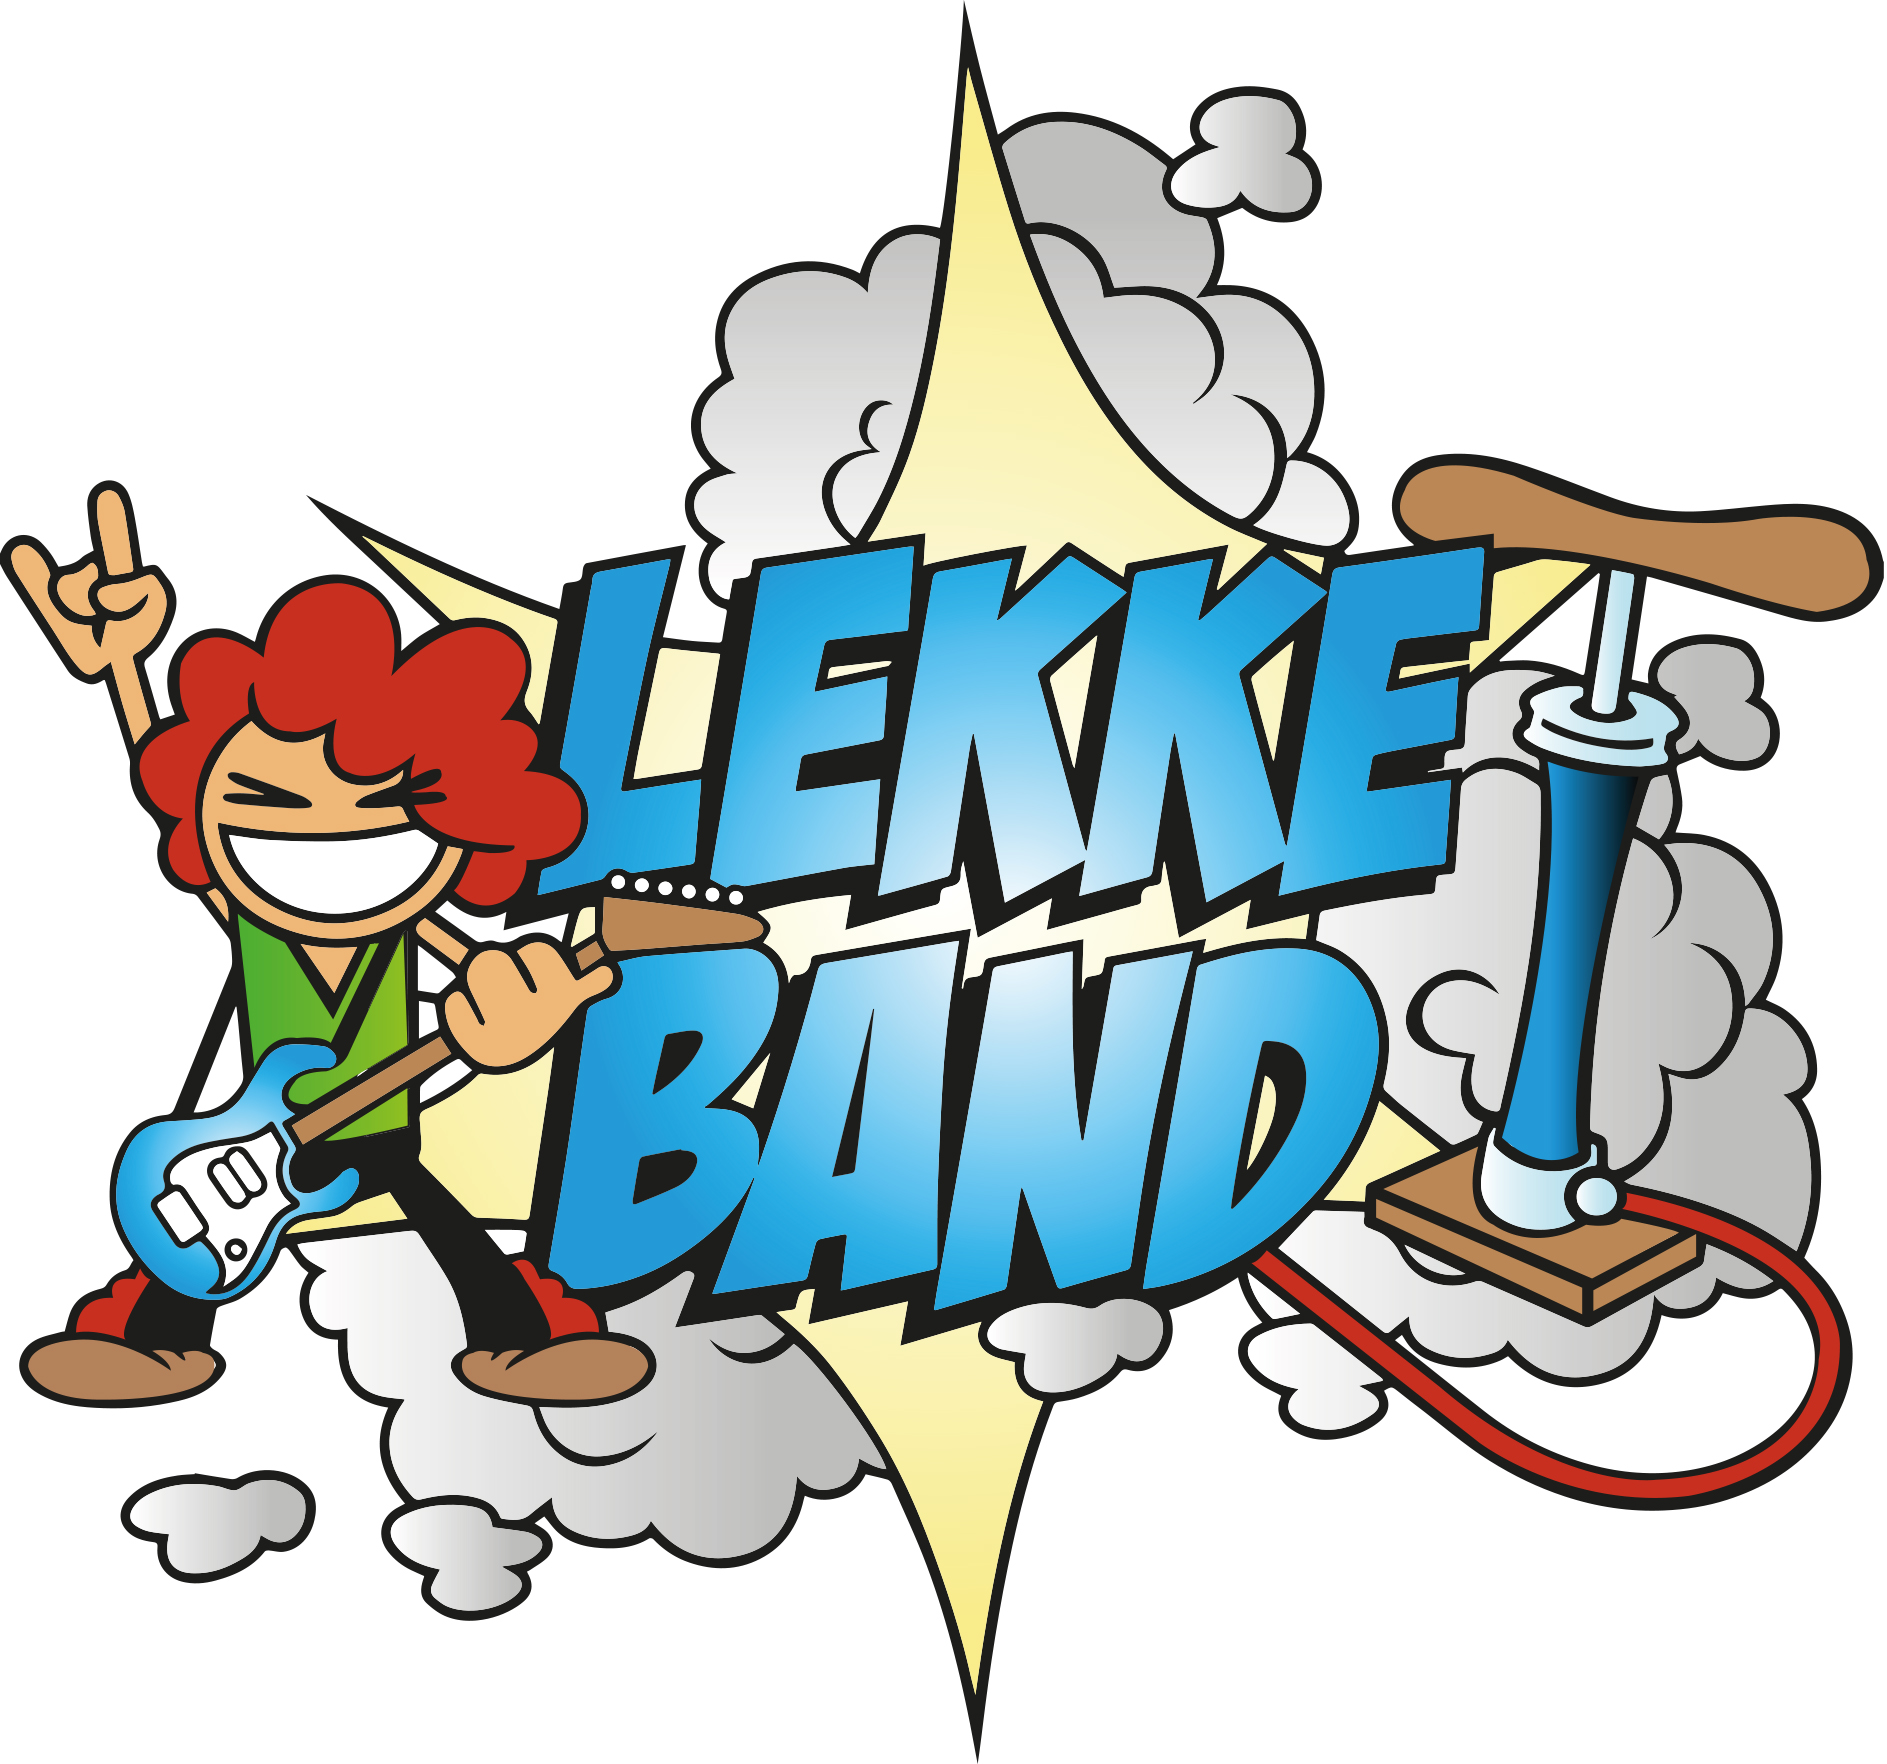 Lekke Band